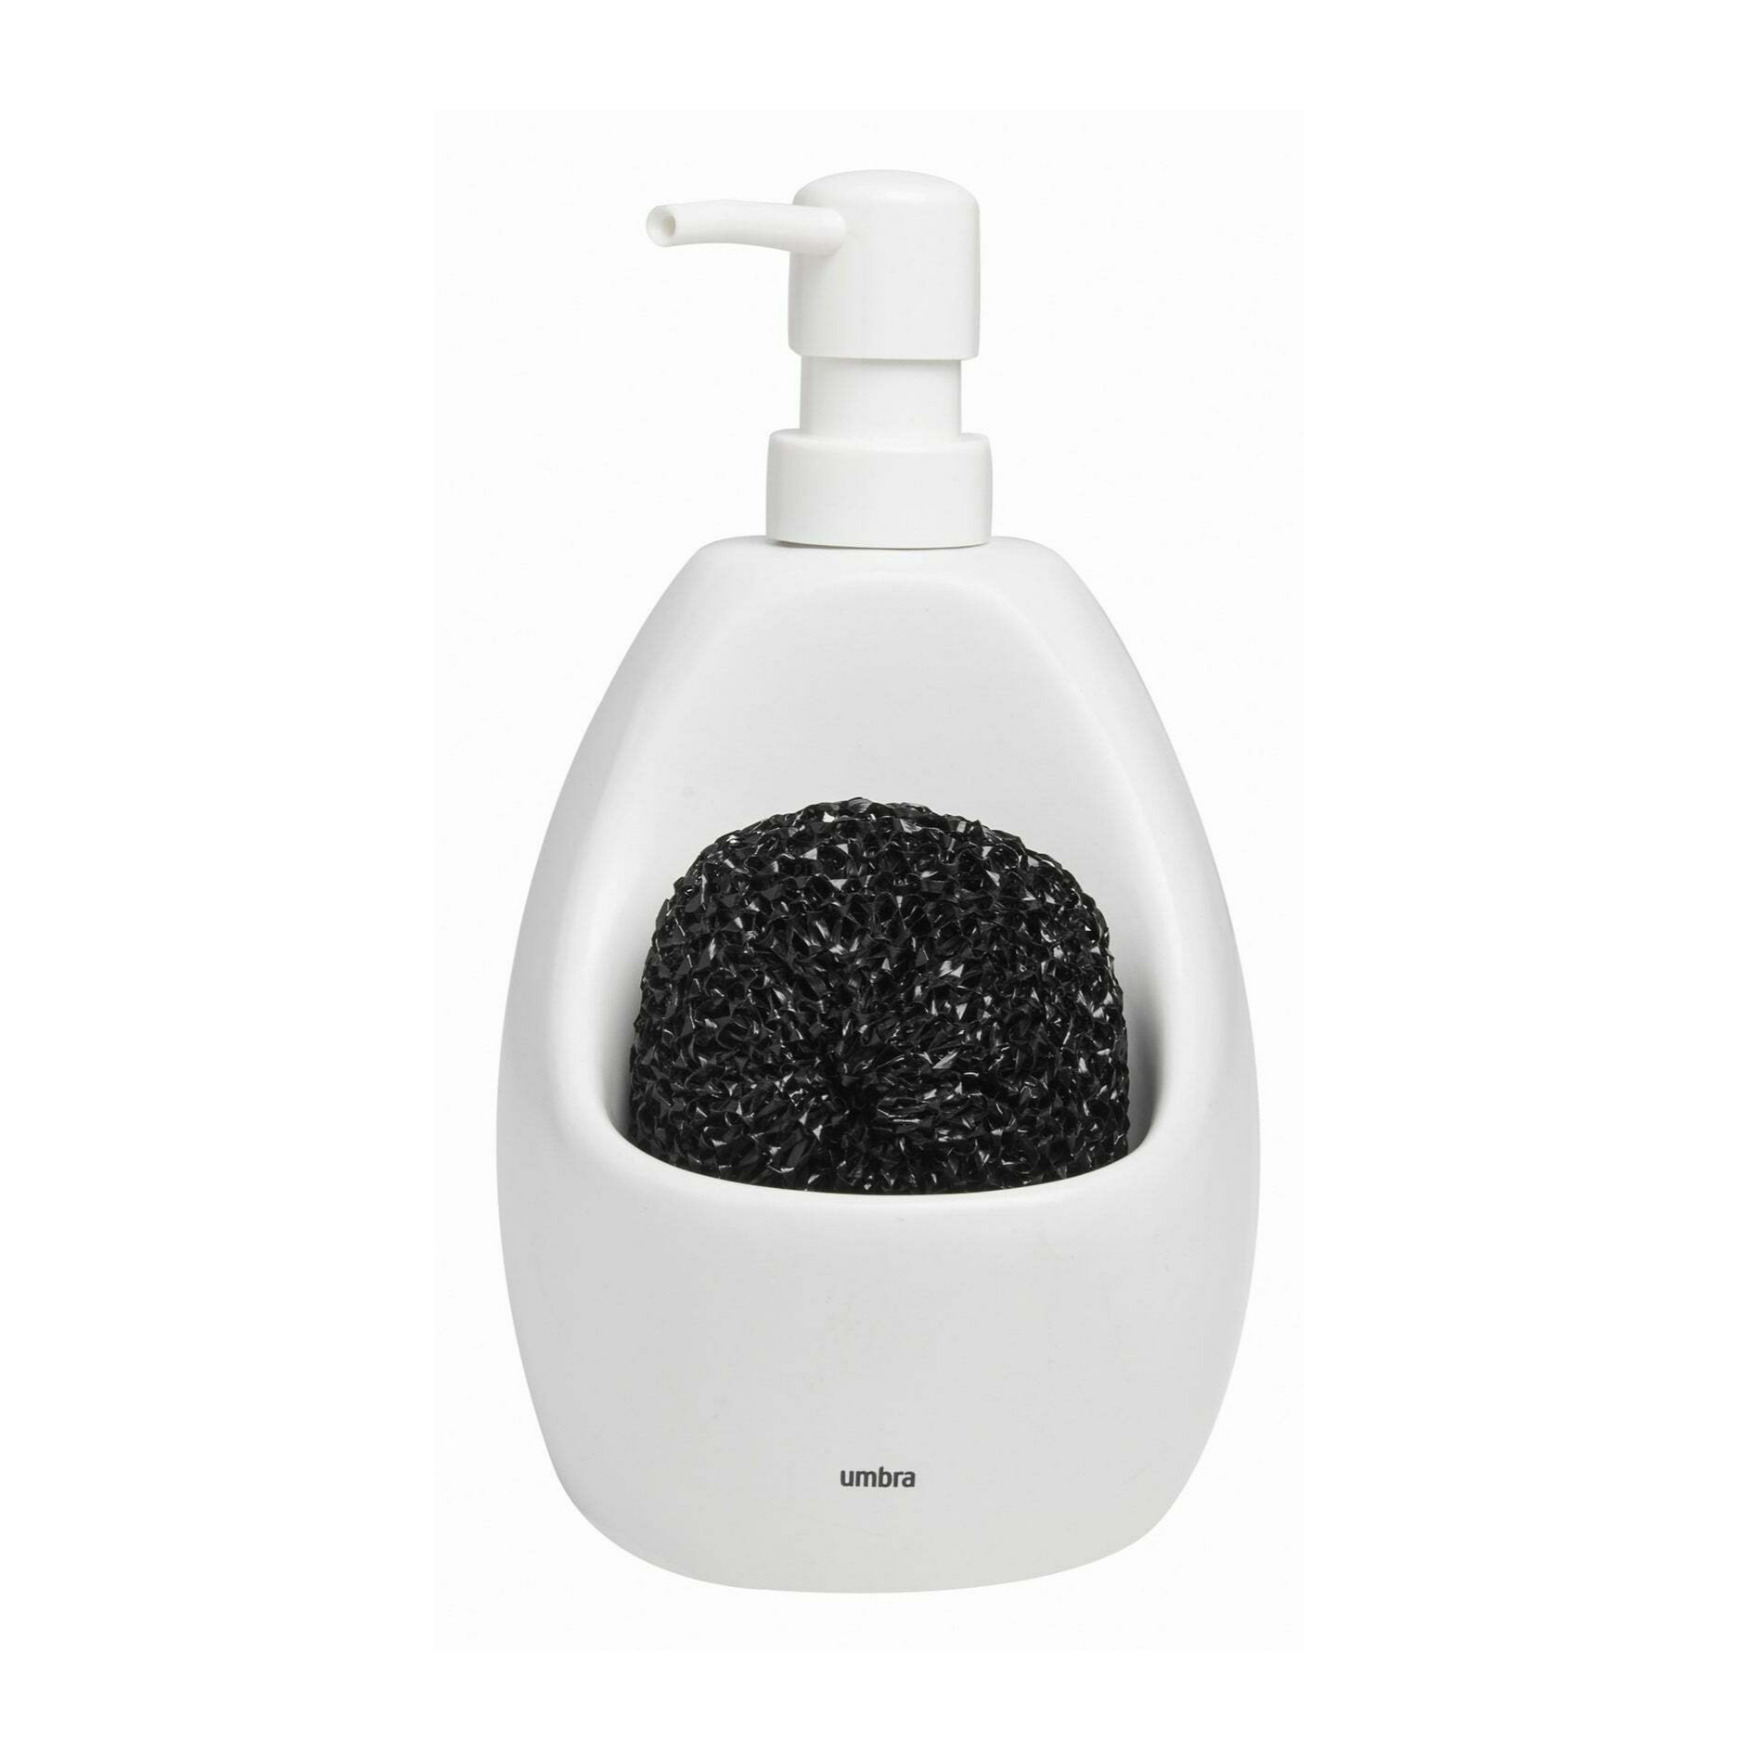 Umbra 330750-660 20 oz Joey Soap Dispenser & Caddy Design Pump Bottle Scrubby Holder - Matte Ceramic & White